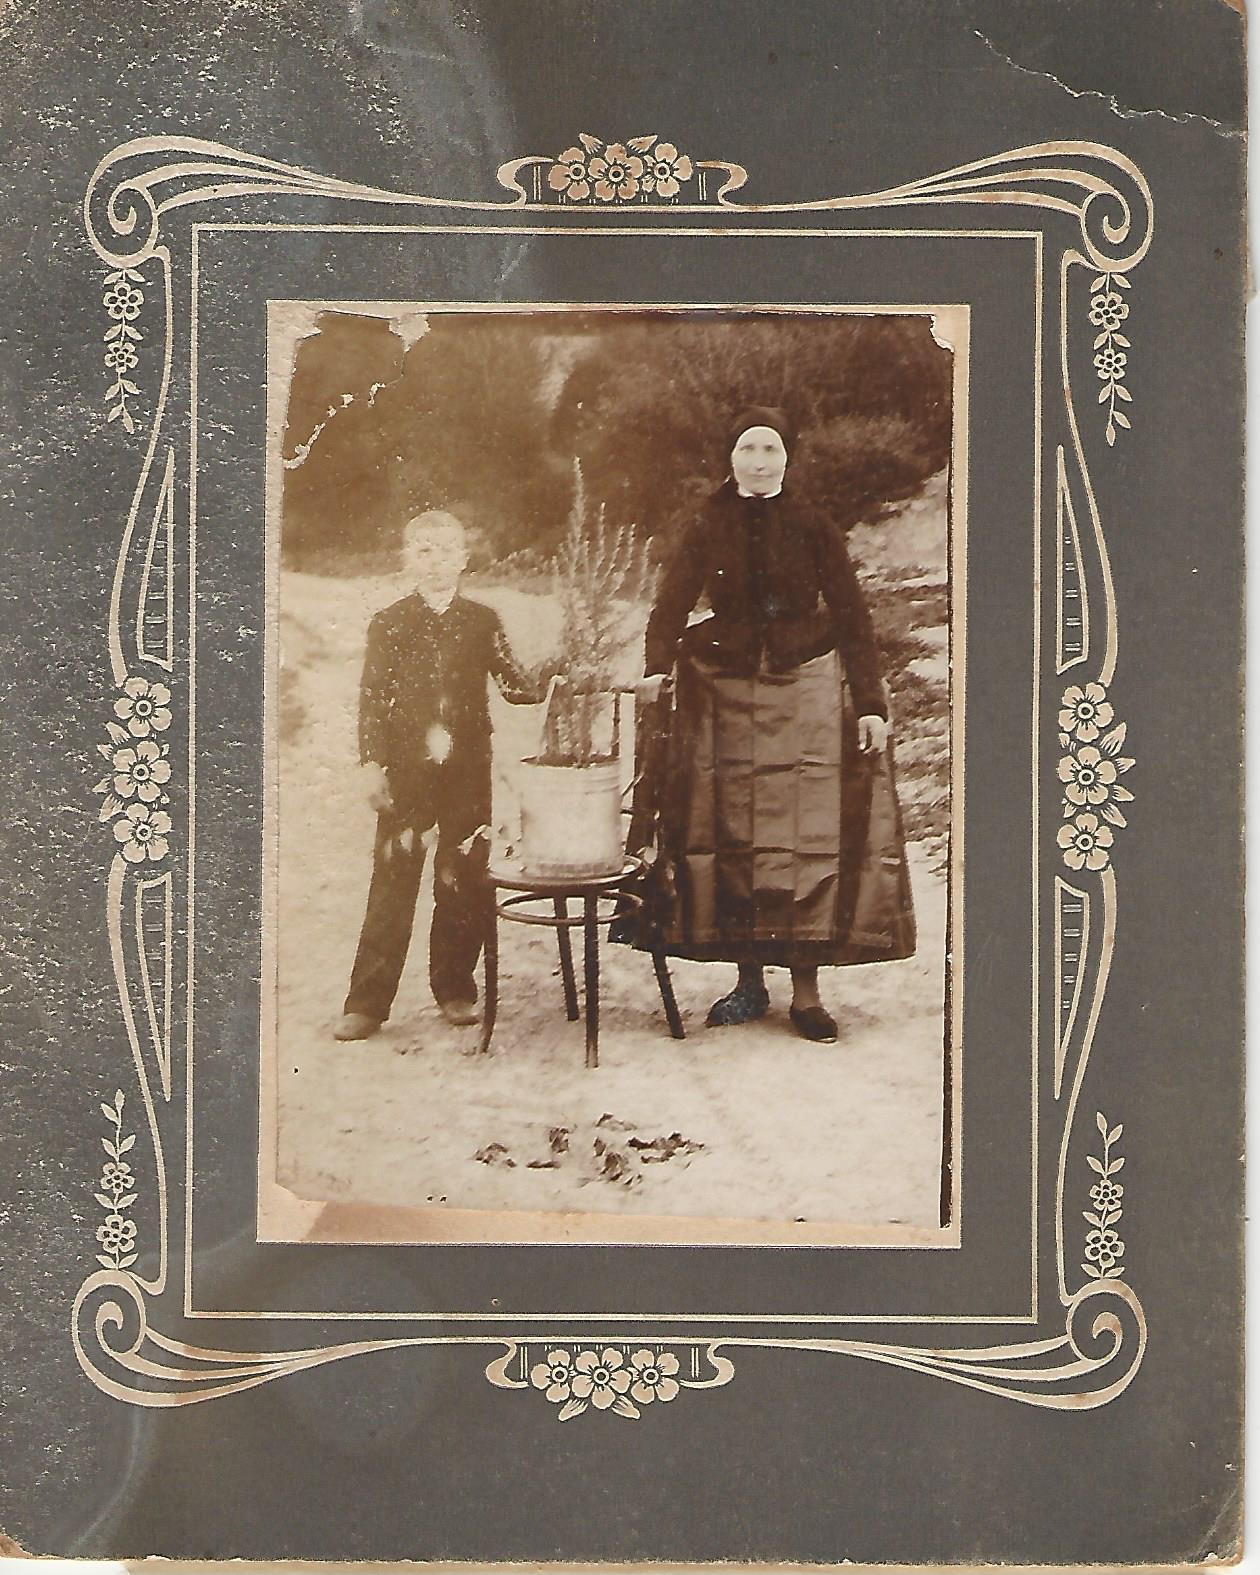 Kisfiú édesanyjával, rozmaringgal Nagykovácsiban Nagykovácsi Öregiskola Közösségi Ház és Könyvtár gyűjteménye